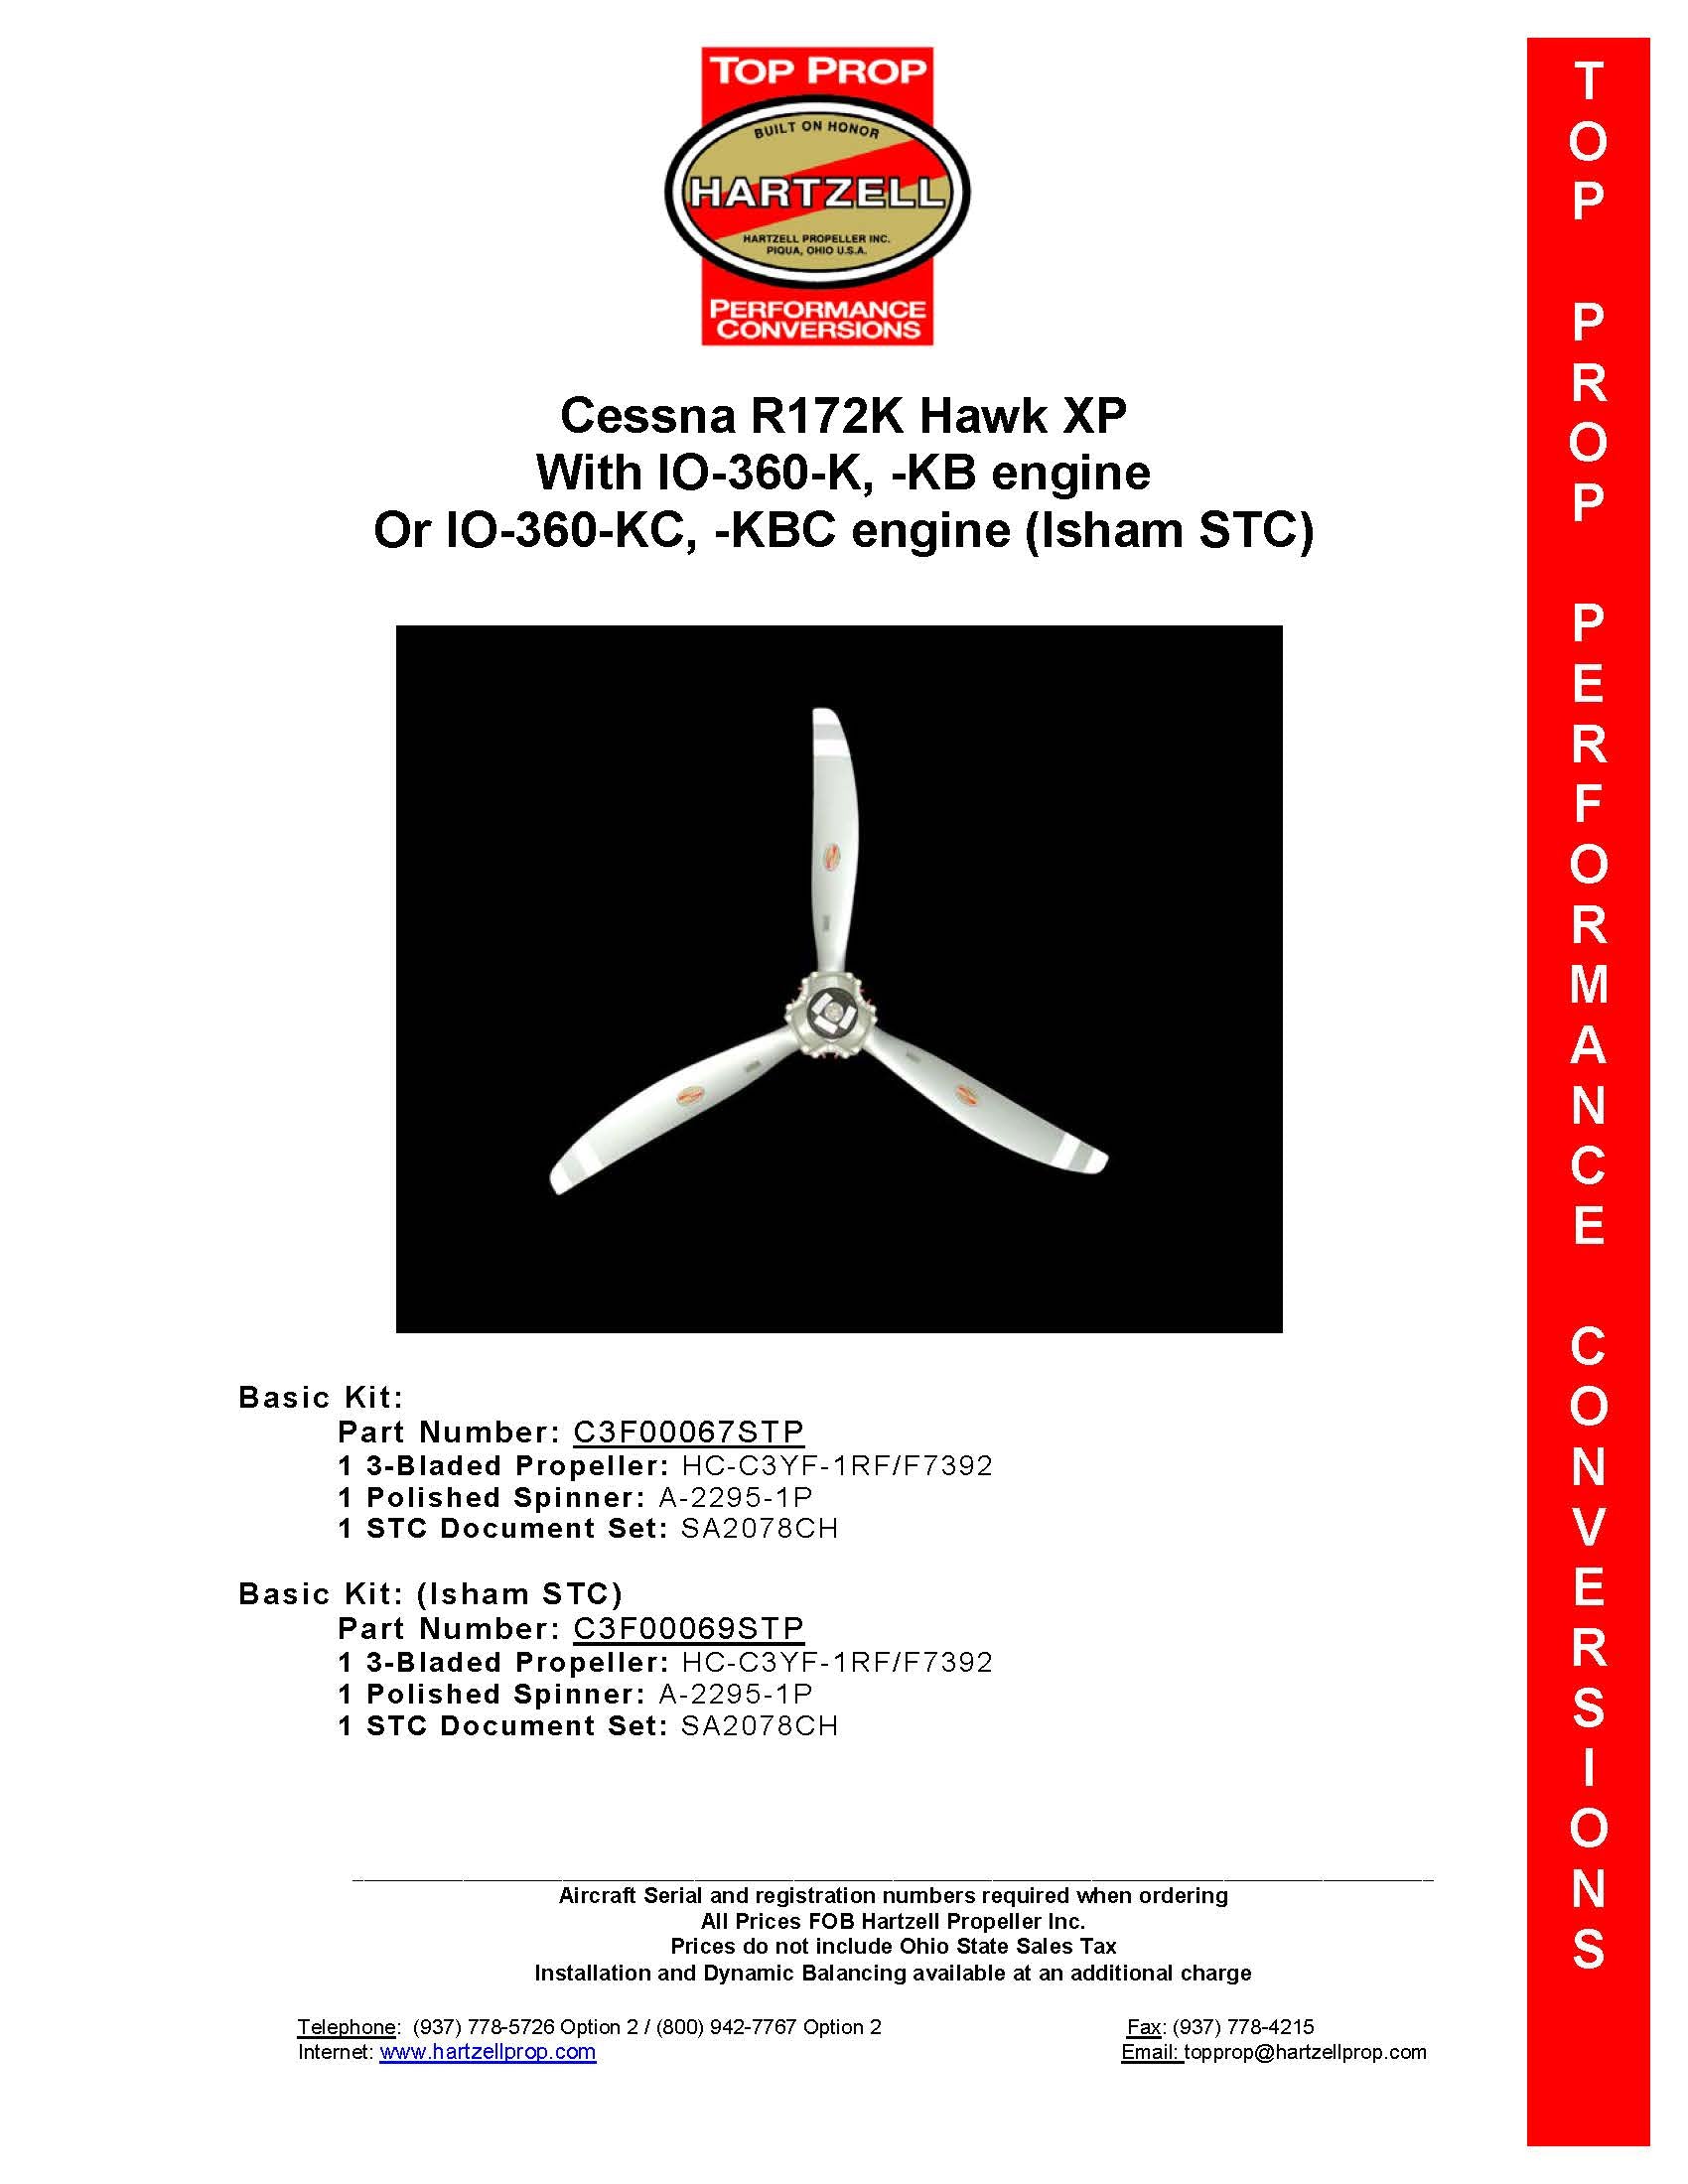 CESSNA-R172K1-C3F00067STP-PAGE-1